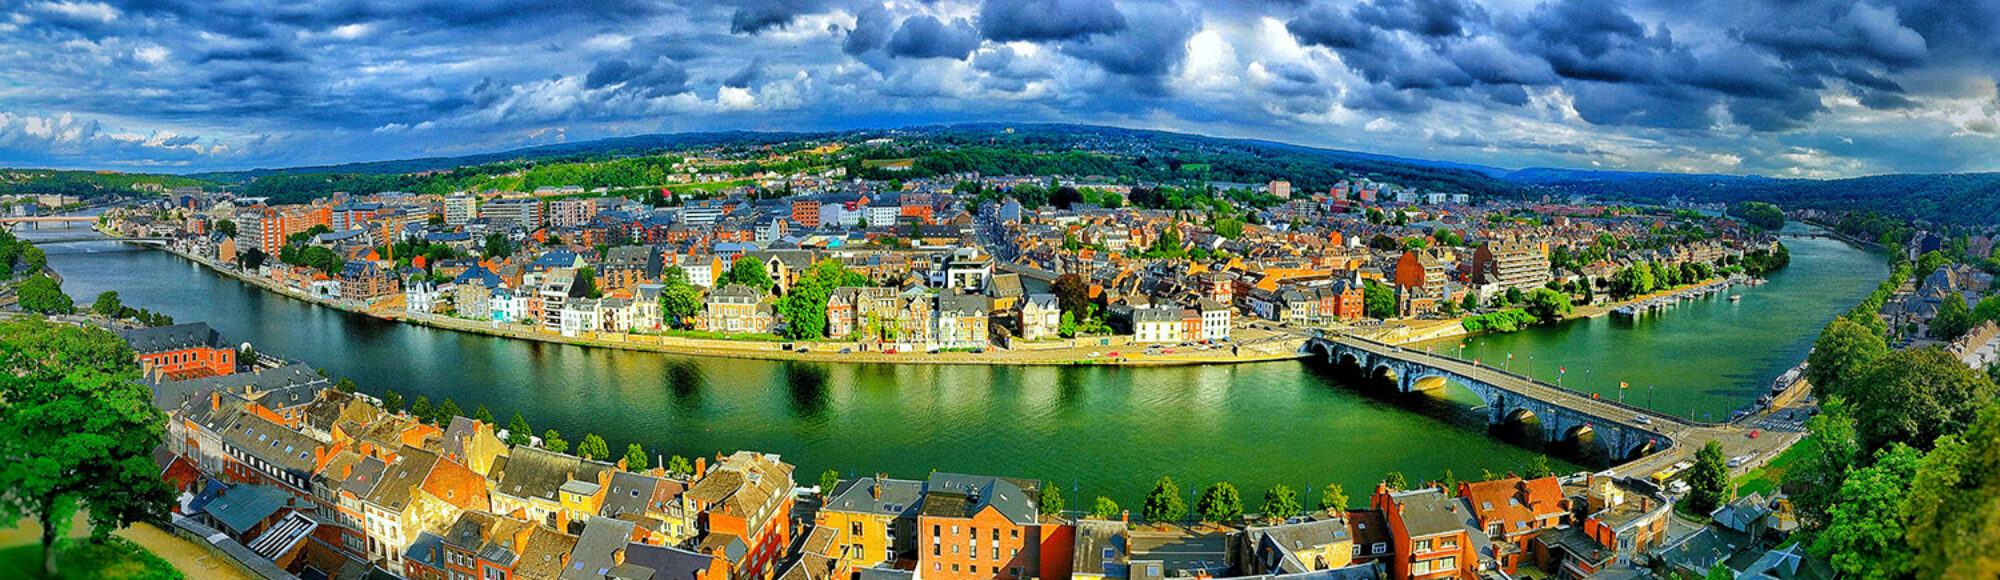 Namur_Panorama